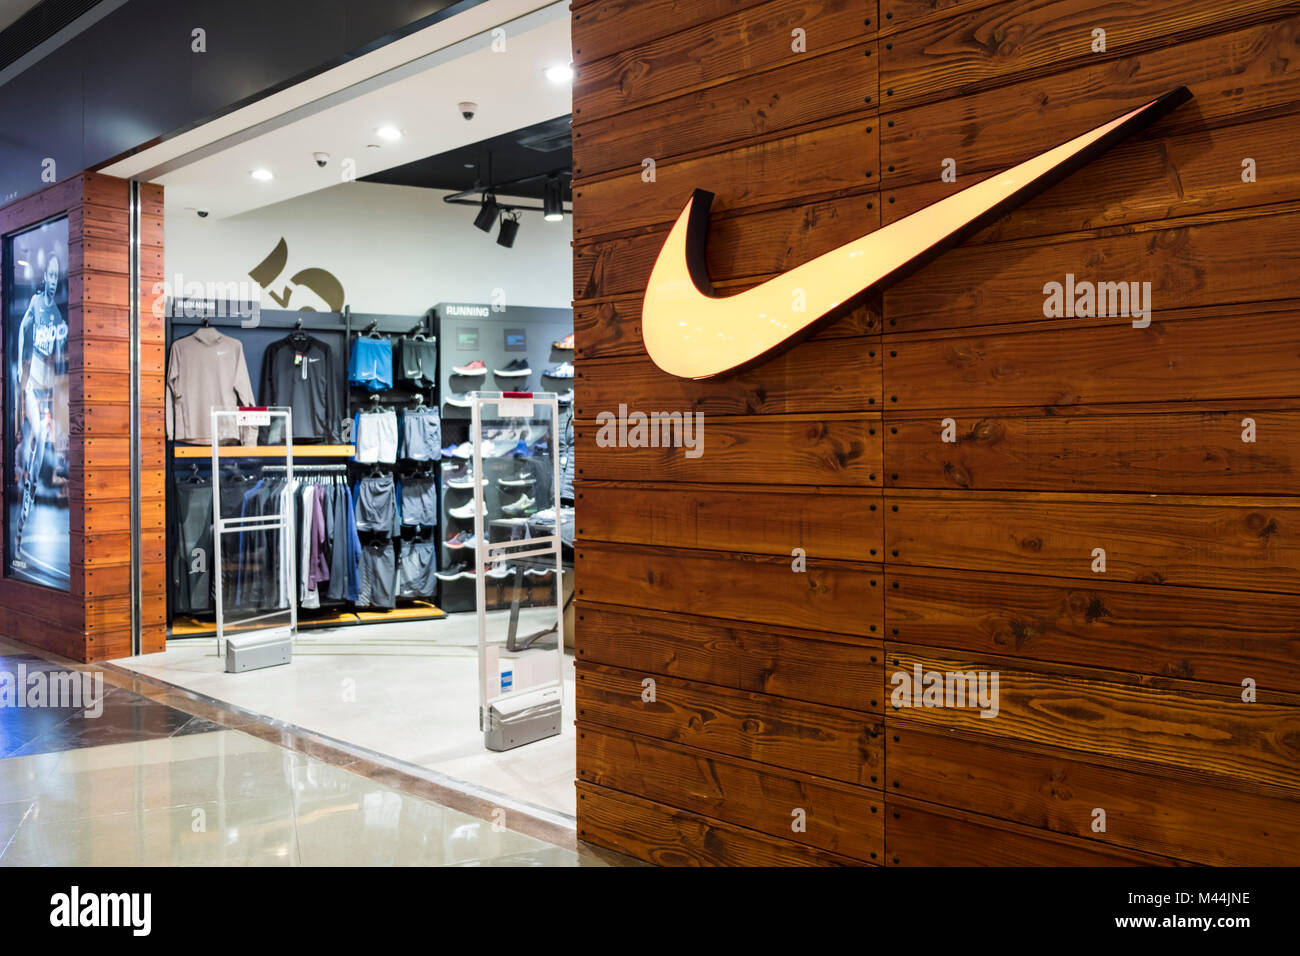 Nike shop immagini e fotografie stock ad alta risoluzione - Alamy